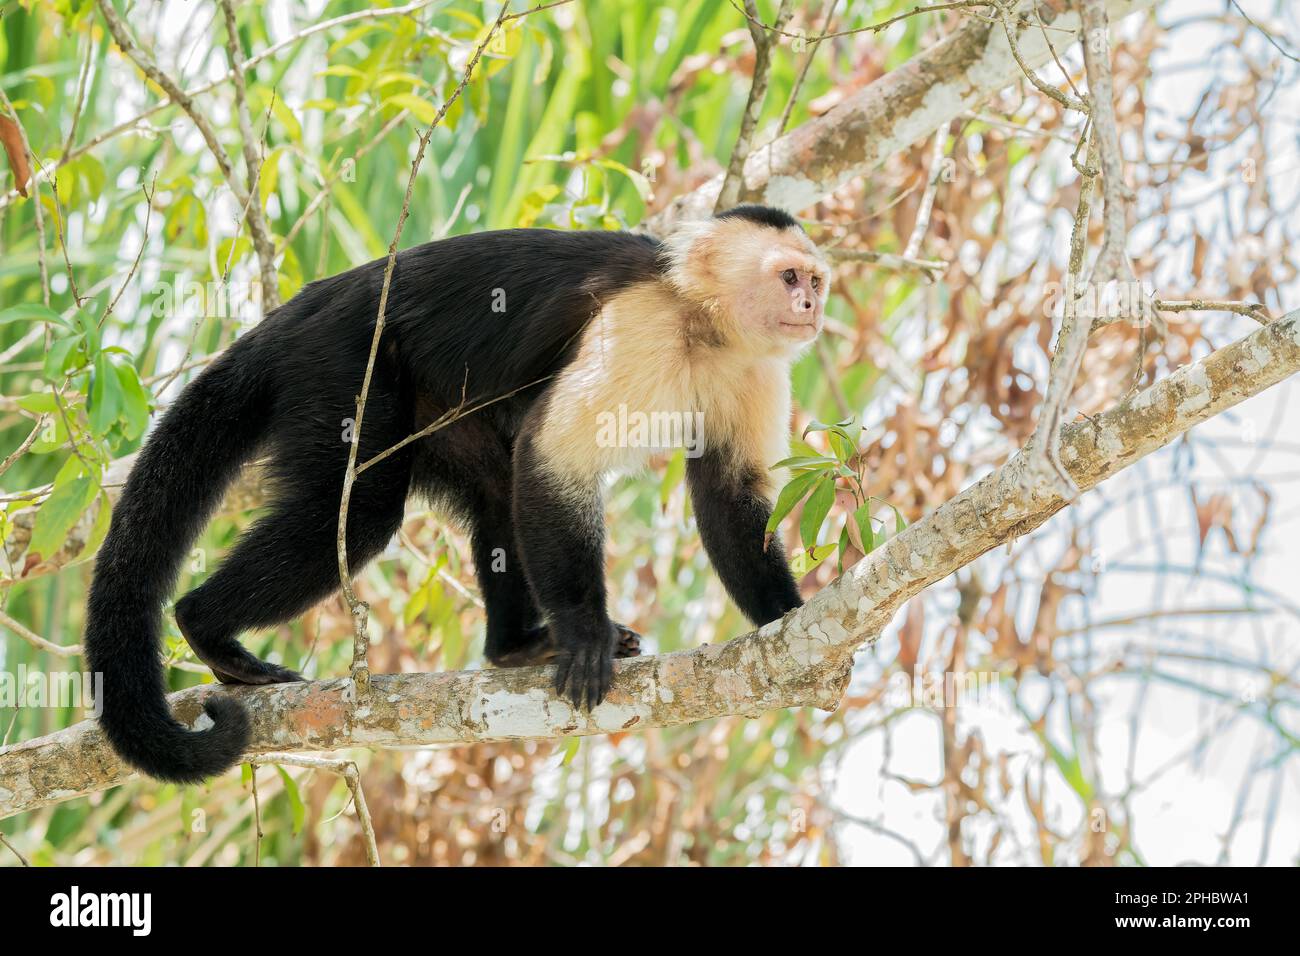 Singe capucin panaméen blanc, imitateur Cebus, adulte unique debout sur la branche de l'arbre au-dessus de l'eau, canal de Panama, Panama. Banque D'Images